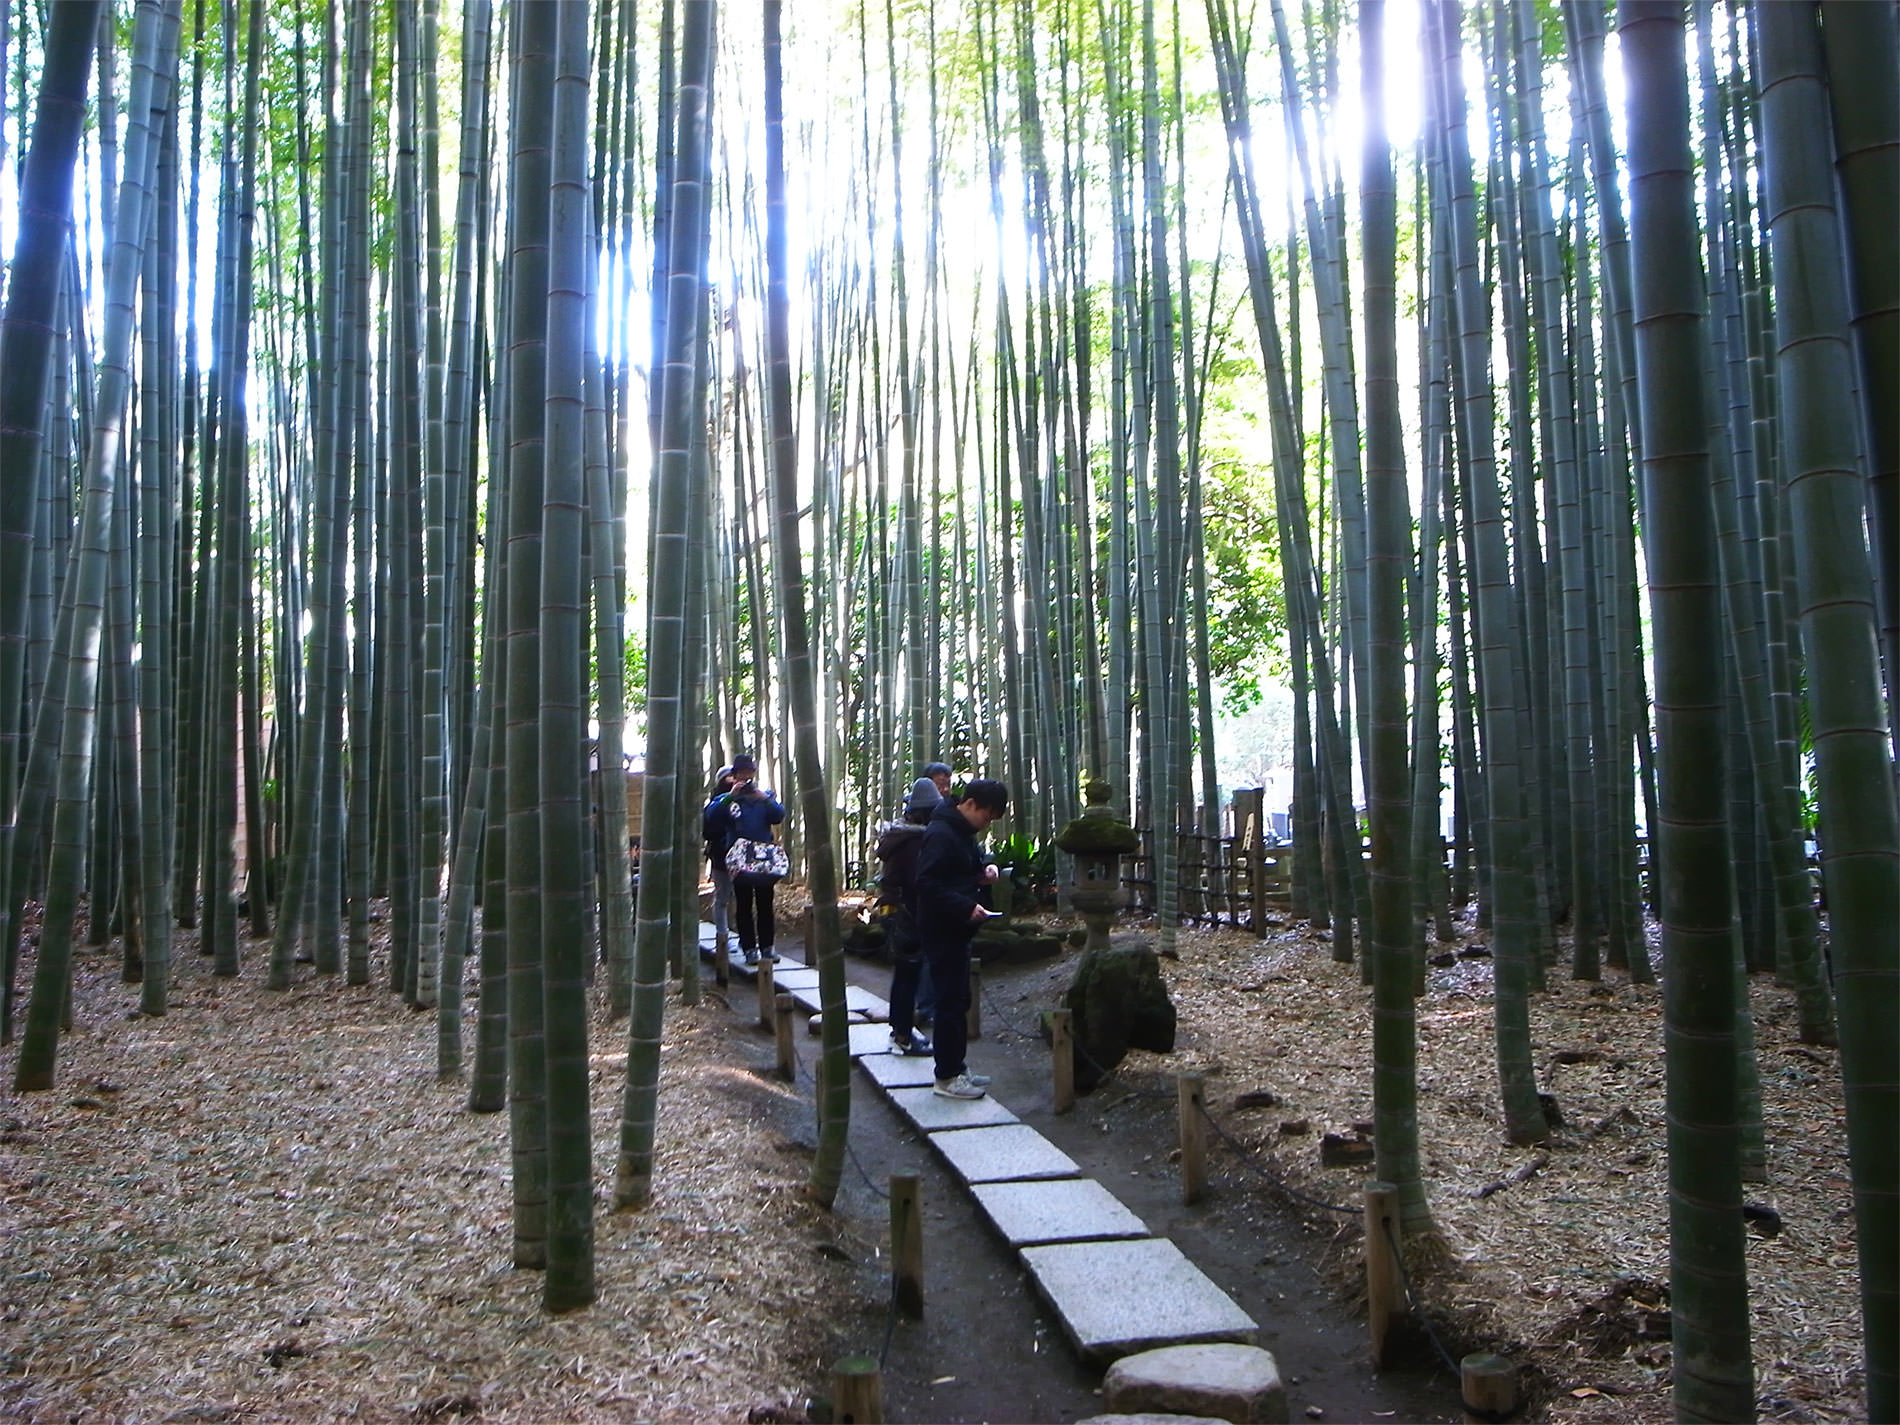 報国寺と竹林と | Hokokuji-Temple and Bamboo thicket in Kamakura